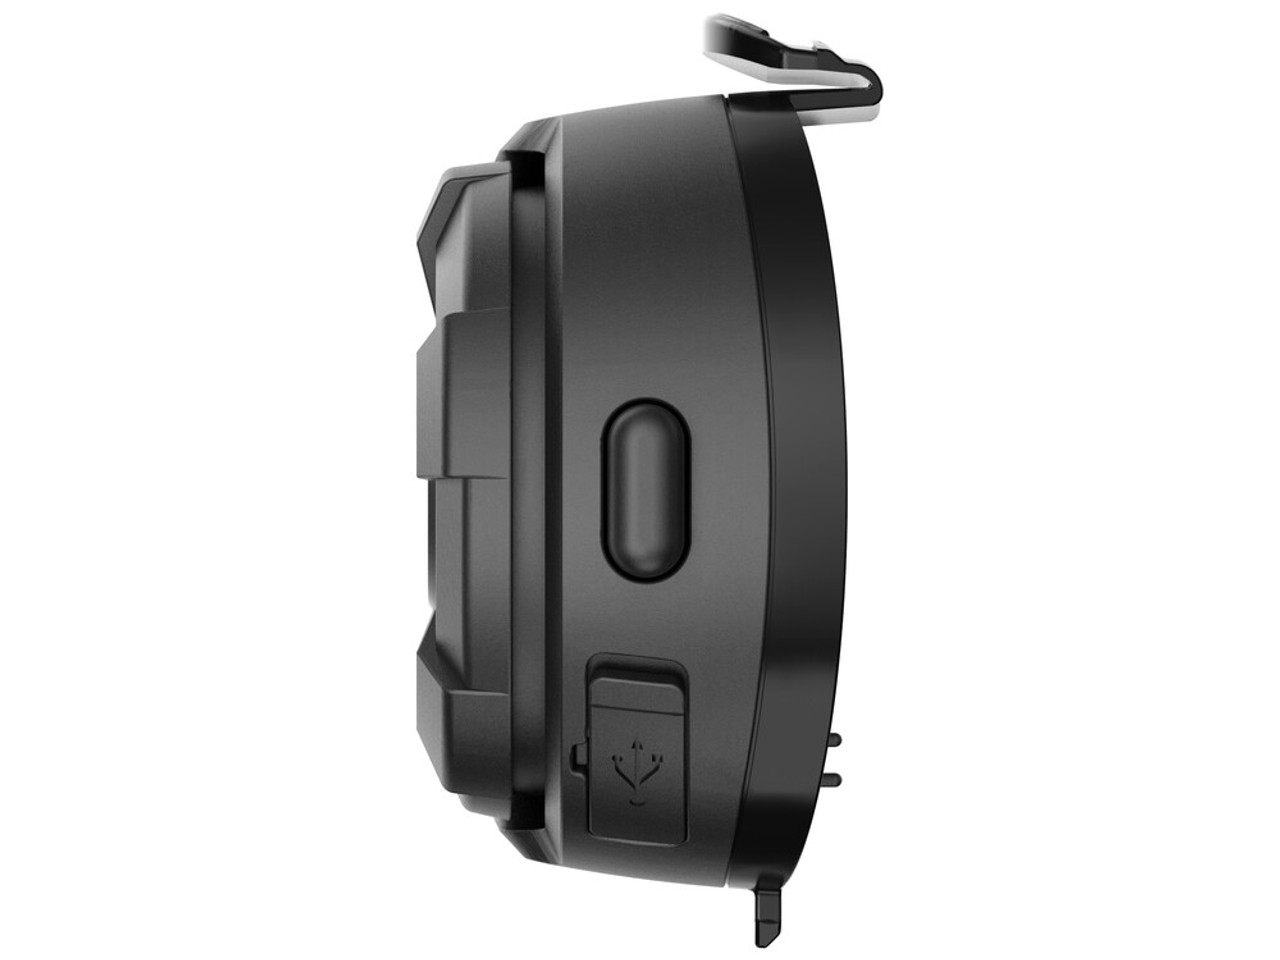 Sena 10S Bluetooth Headset Review at SpeedAddicts.com 